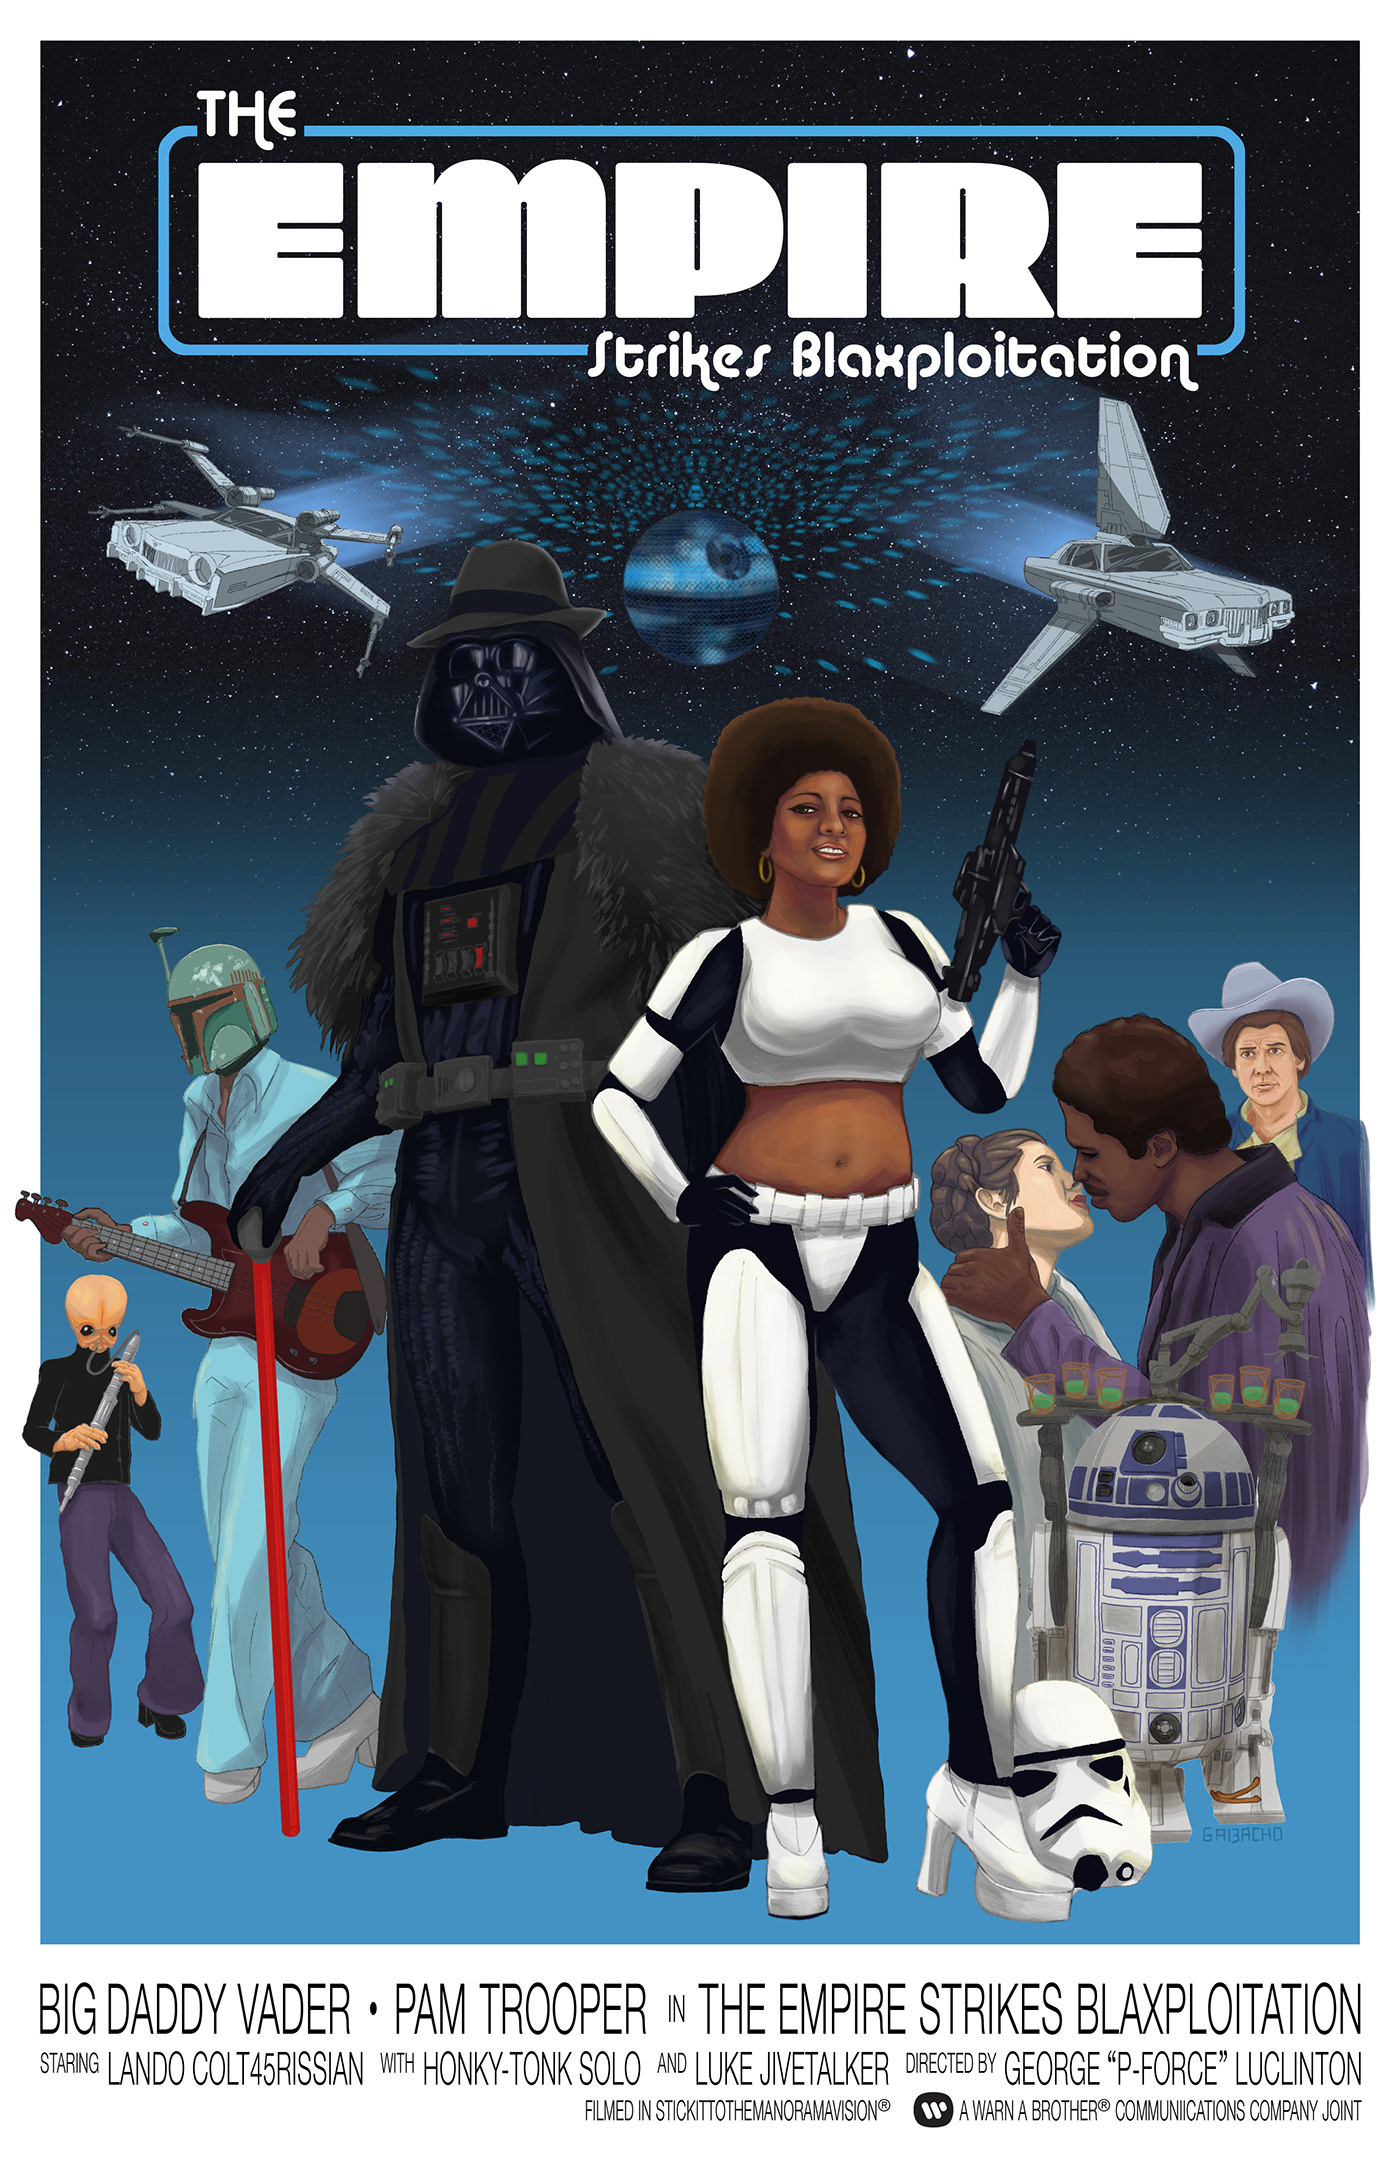 blaxploitation boba fett darth vader Empire Strikes Back illustrations Pam Grier star wars storm trooper Urban Arts